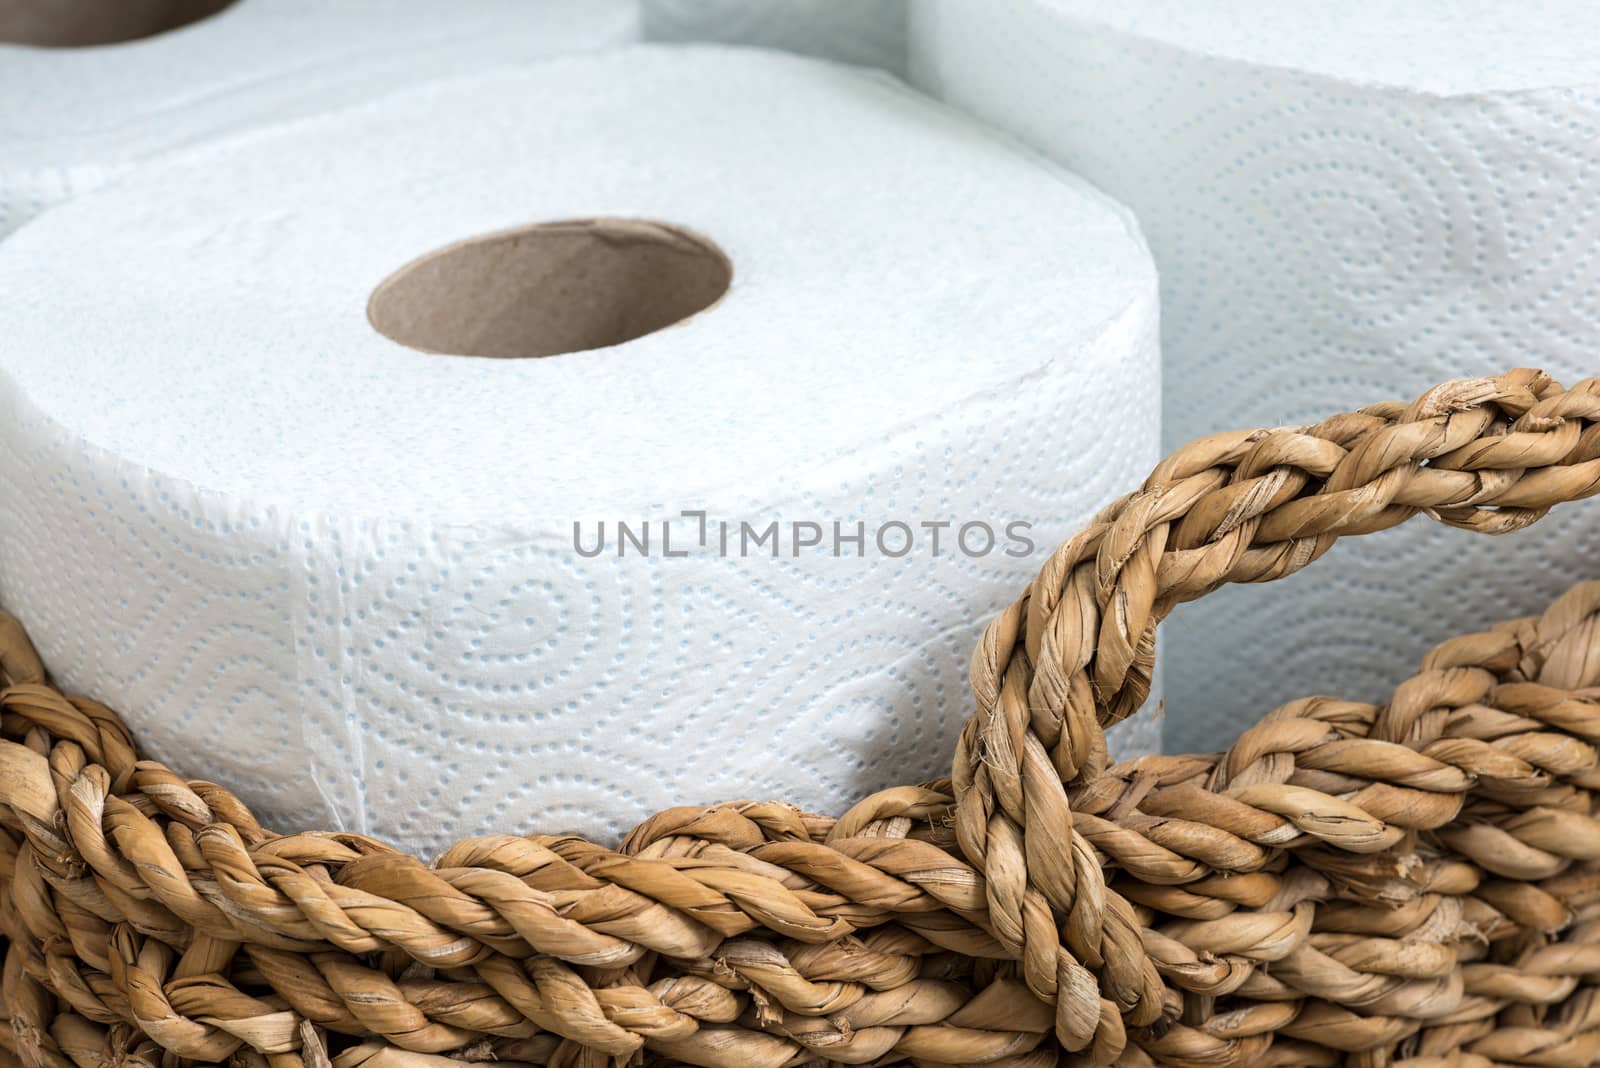 paper towel in a wicker basket